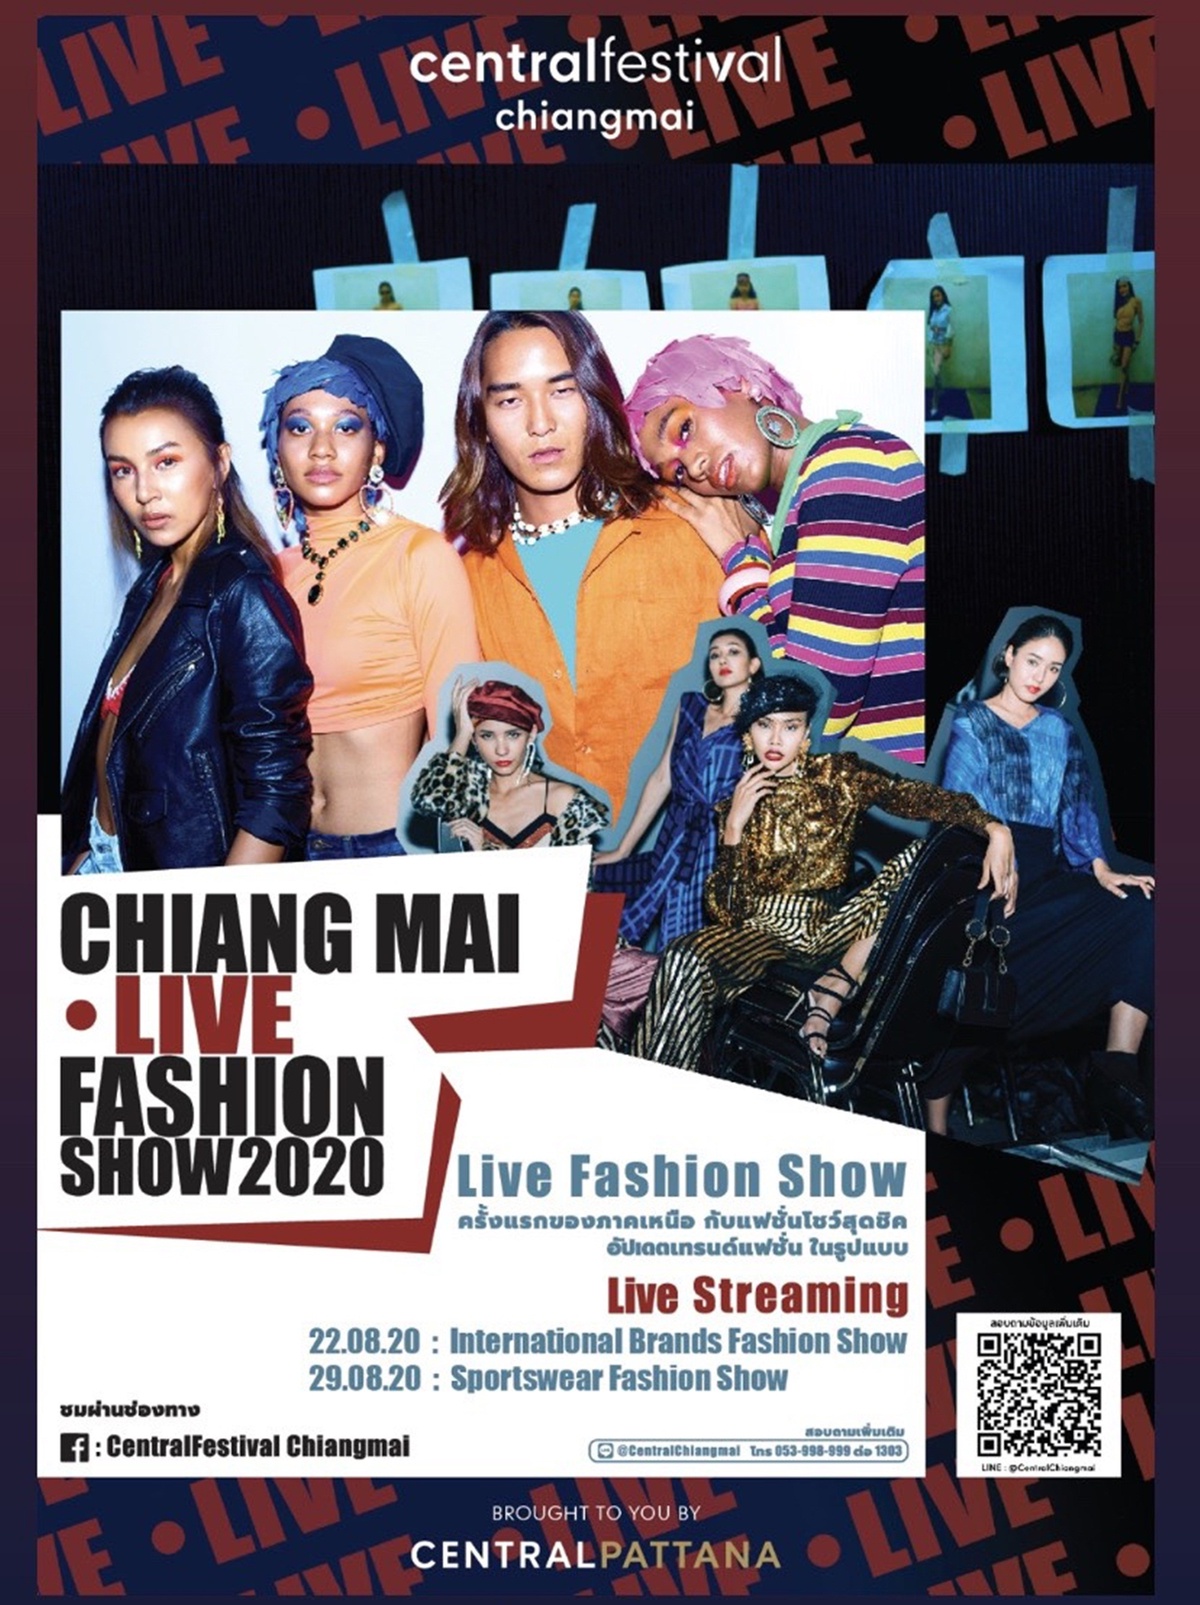 เซ็นทรัลเฟสติวัล เชียงใหม่ เปิดรันเวย์แบบ New normal จัด 'Chiangmai Live Fashion Show 2020 ครั้งแรกของภาคเหนือกับแฟชั่นโชว์ในรูปแบบ Live